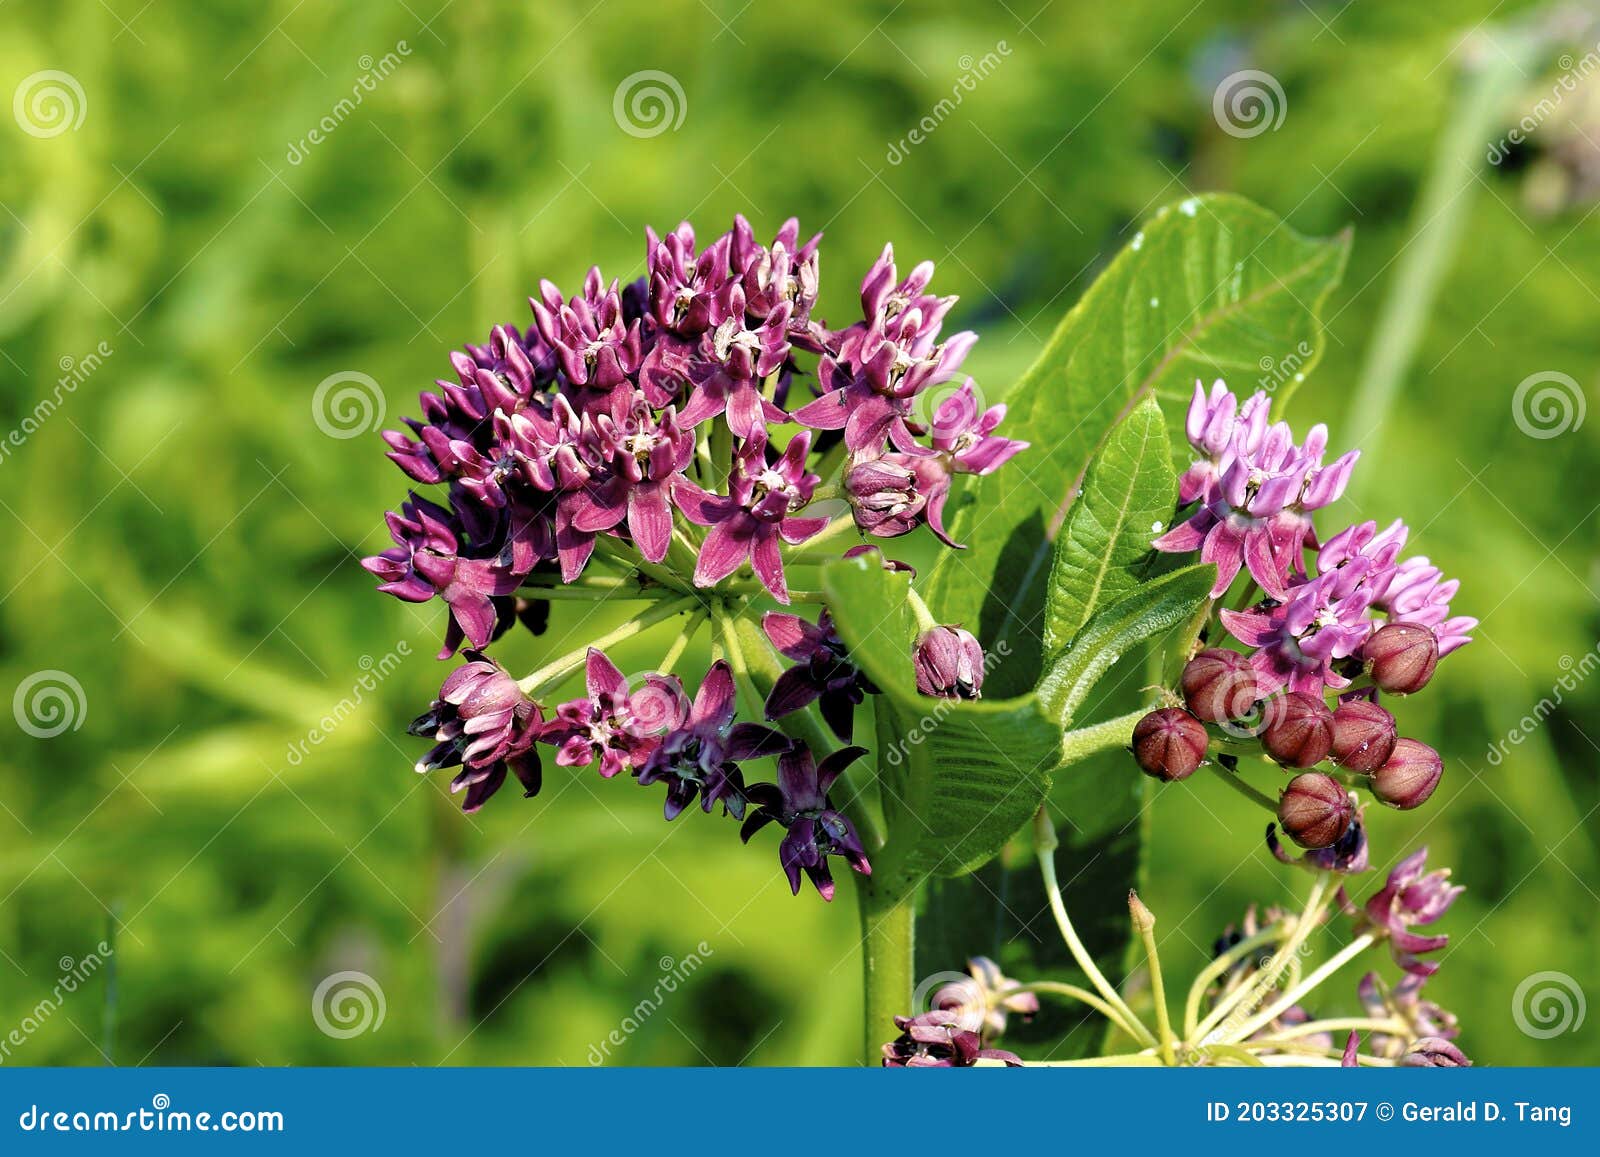 purple milkweed    604615